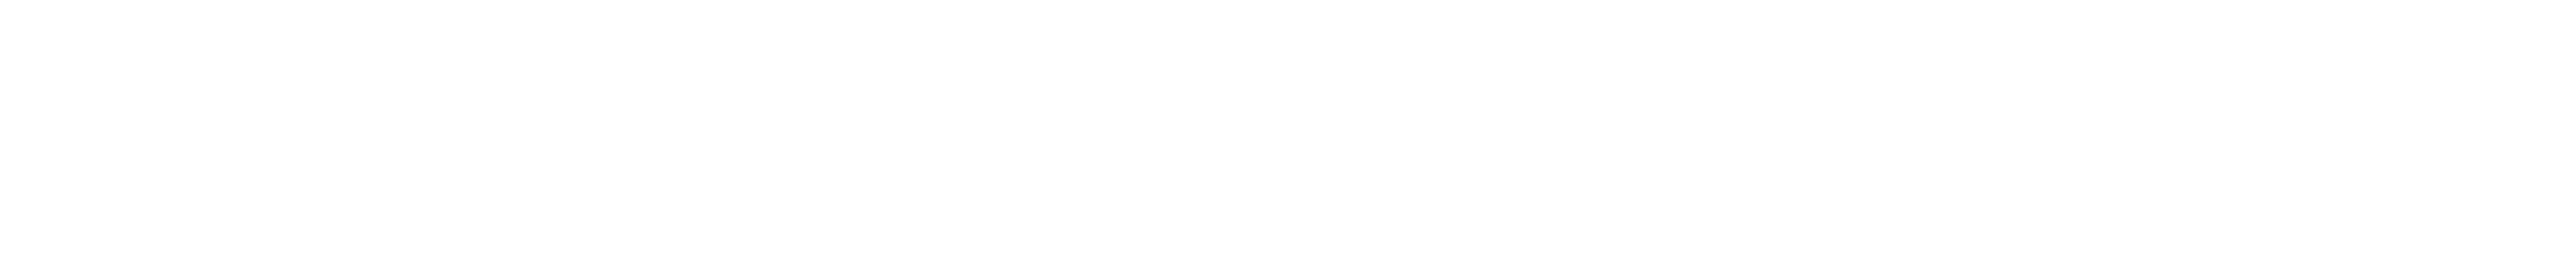 commercial-development-sontowski-partner-logo-white_Zeichenfläche 1